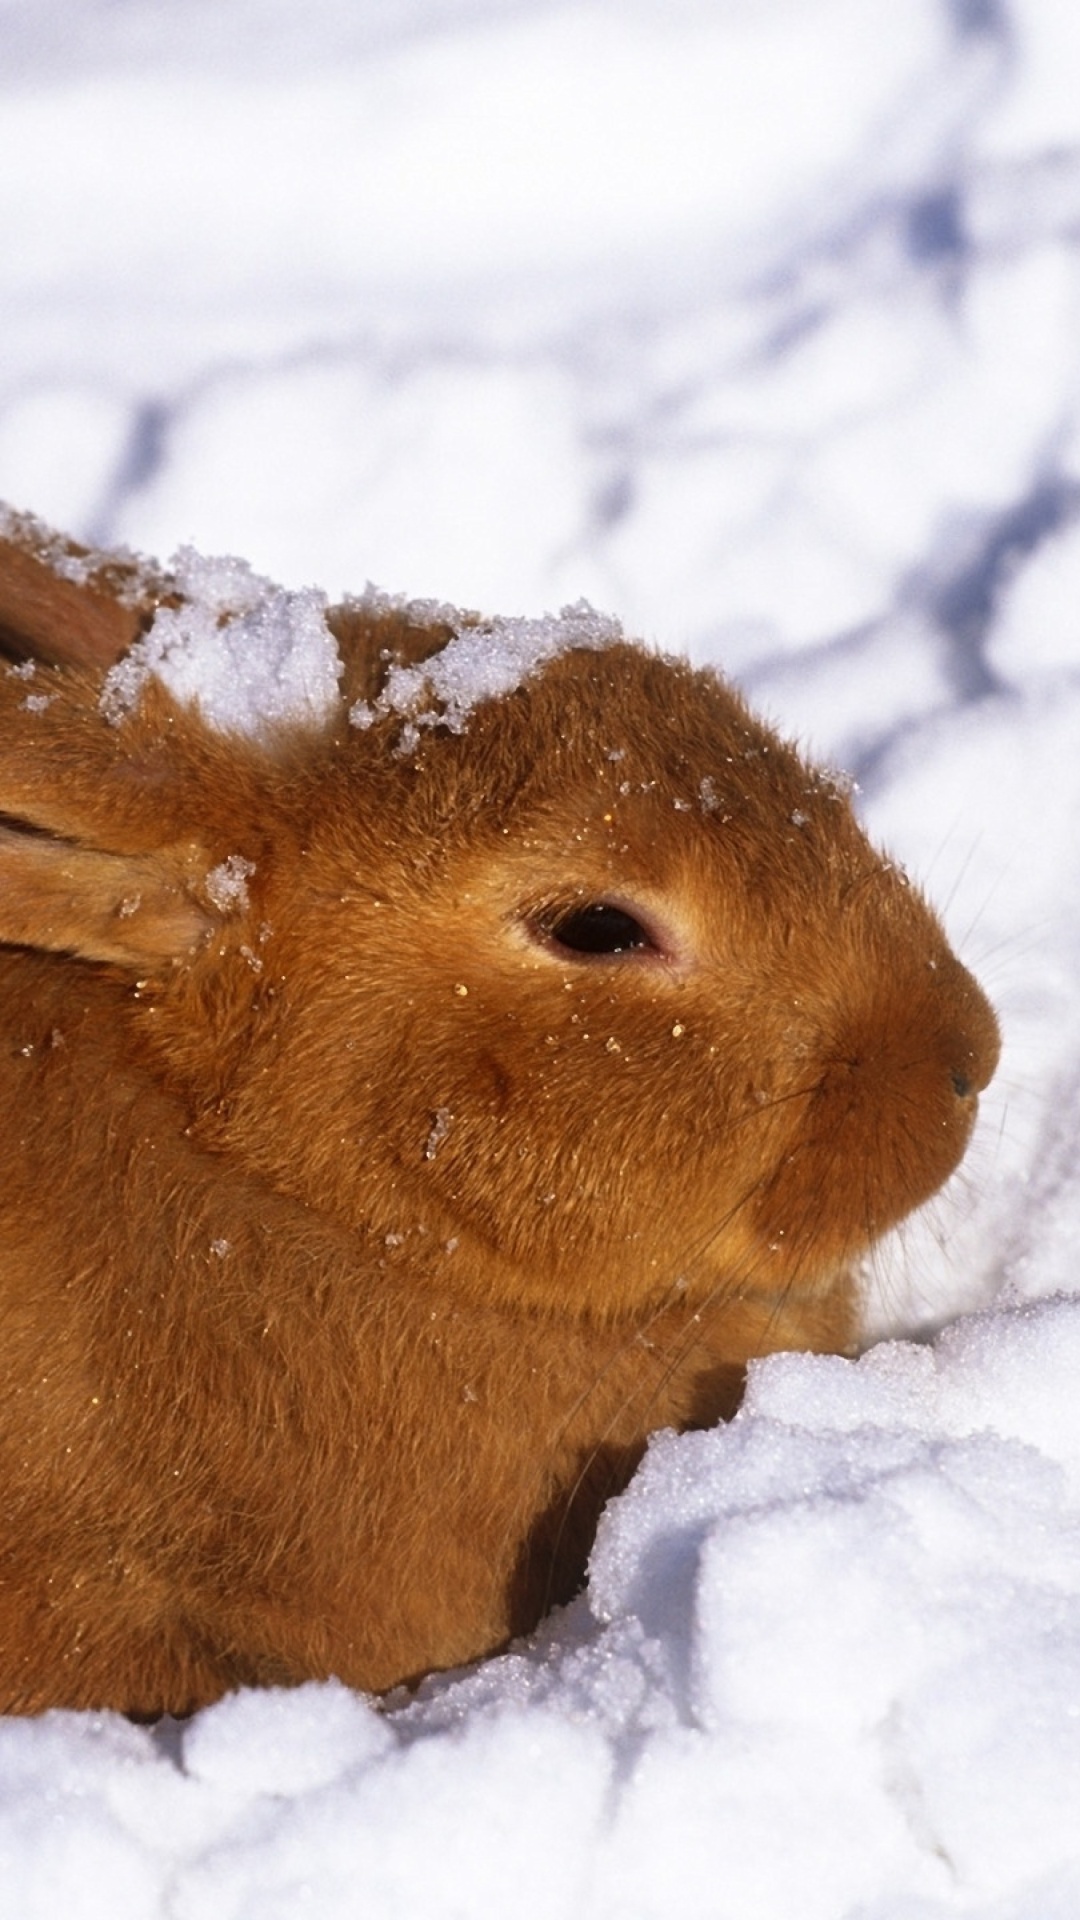 Обои Rabbit in Snow 1080x1920